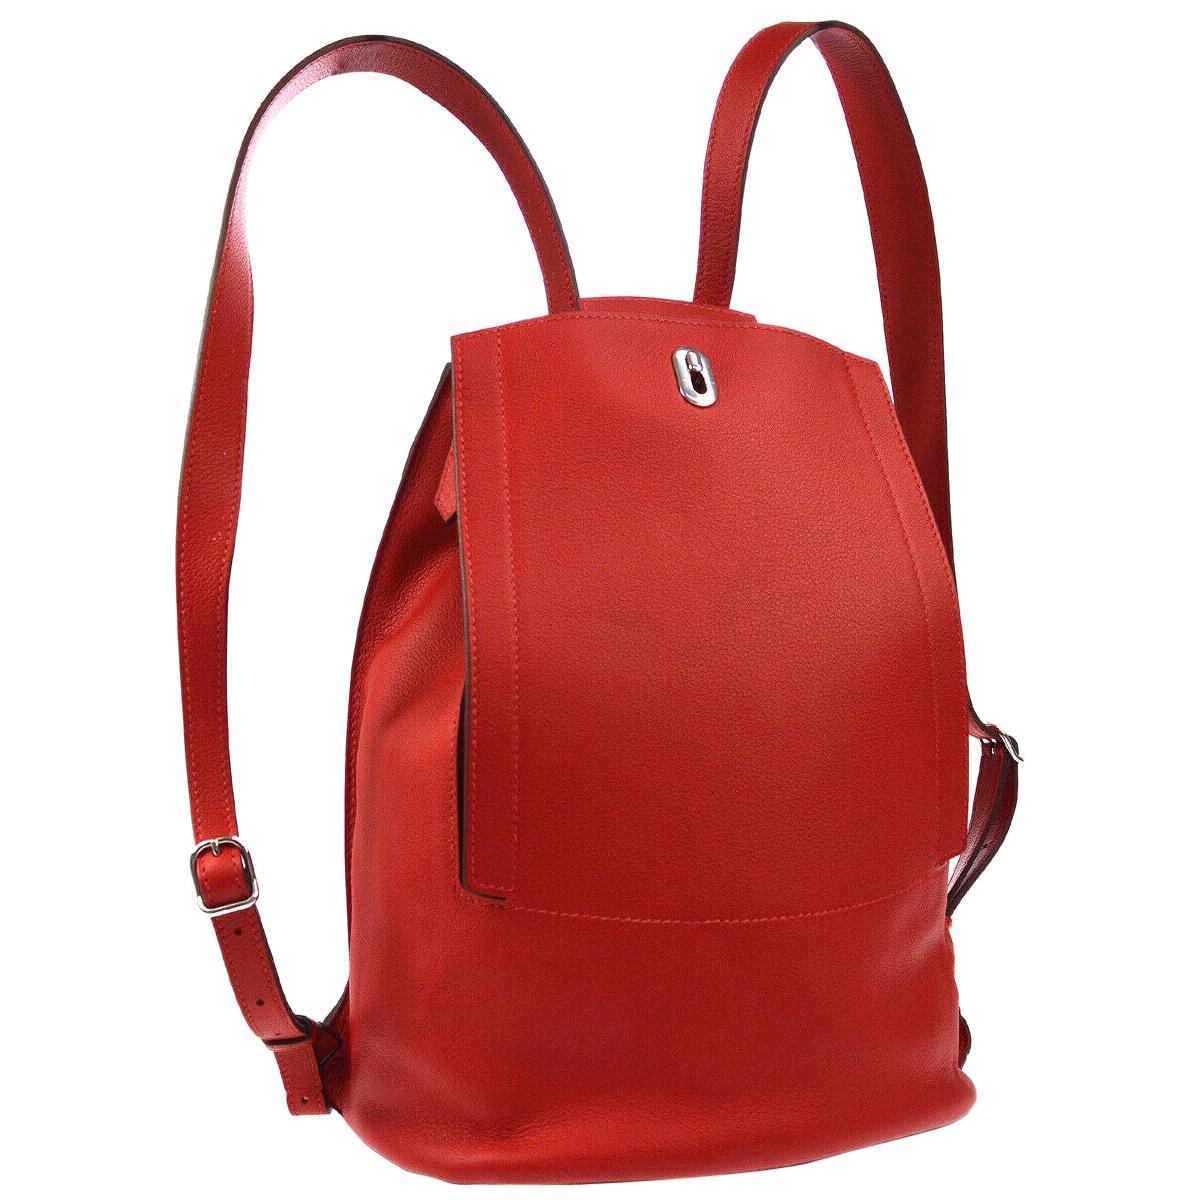  Hermes Red Leather Men's Women's Travel Carryall Backpack Bag